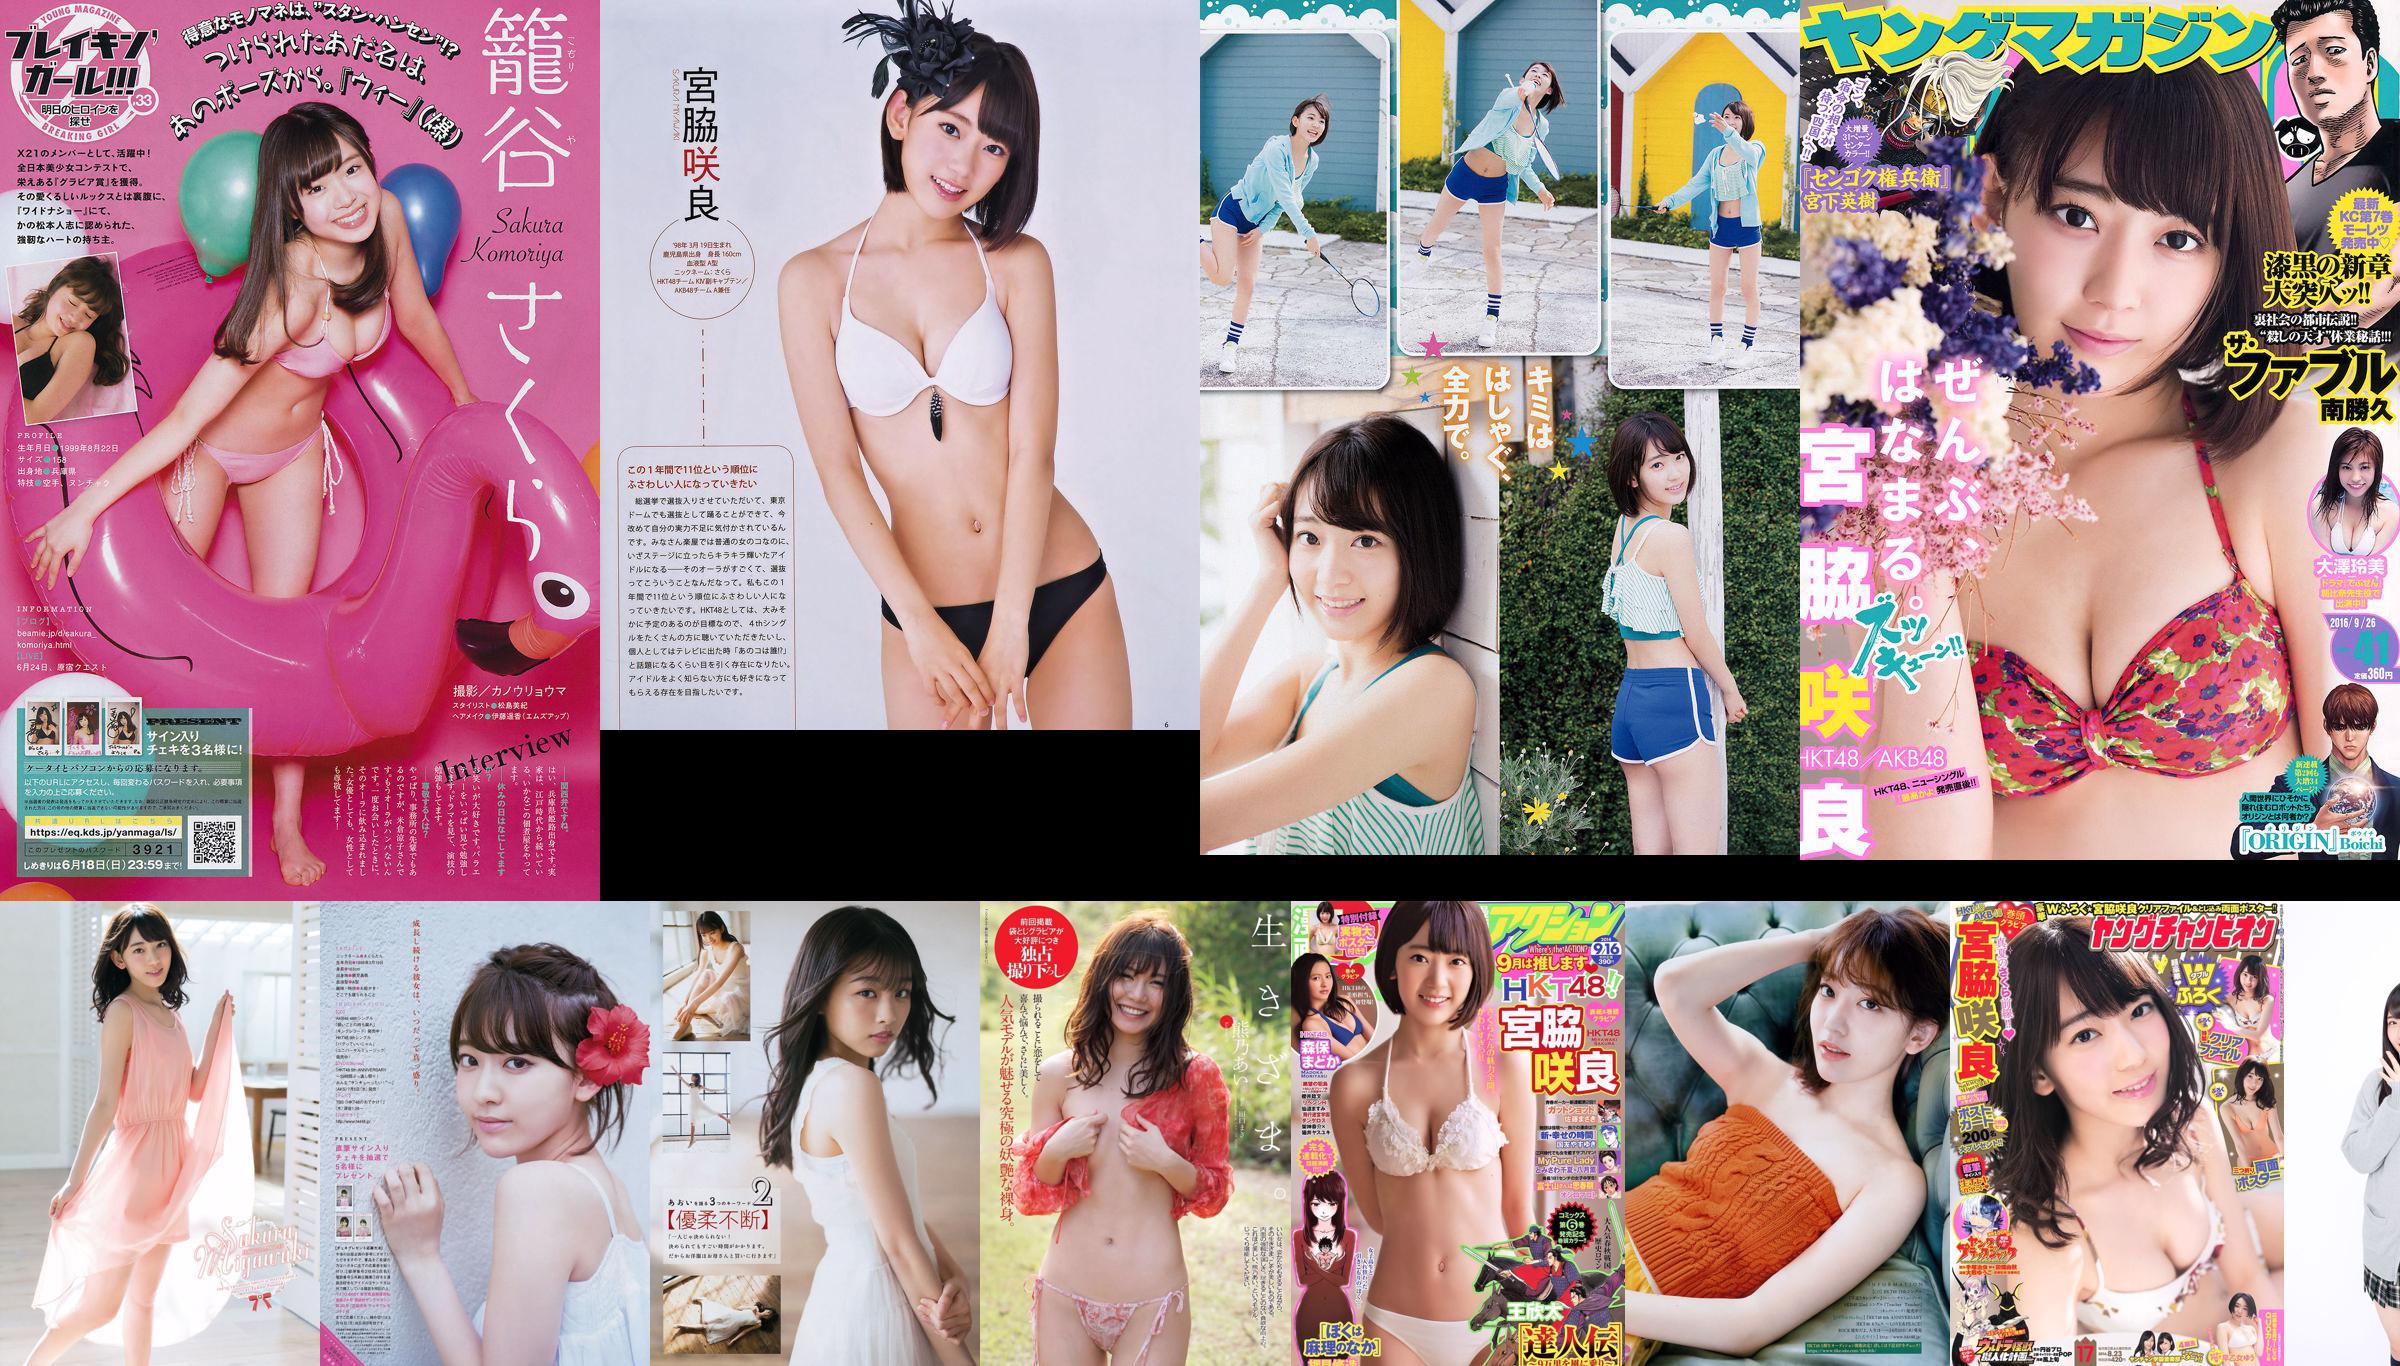 [Bomb Magazine] 2014 No.10 Sakura Miyawaki Haruka Kodama Madoka Moriyasu Natsumi Matsuoka Fotografie No.646b3d Seite 9